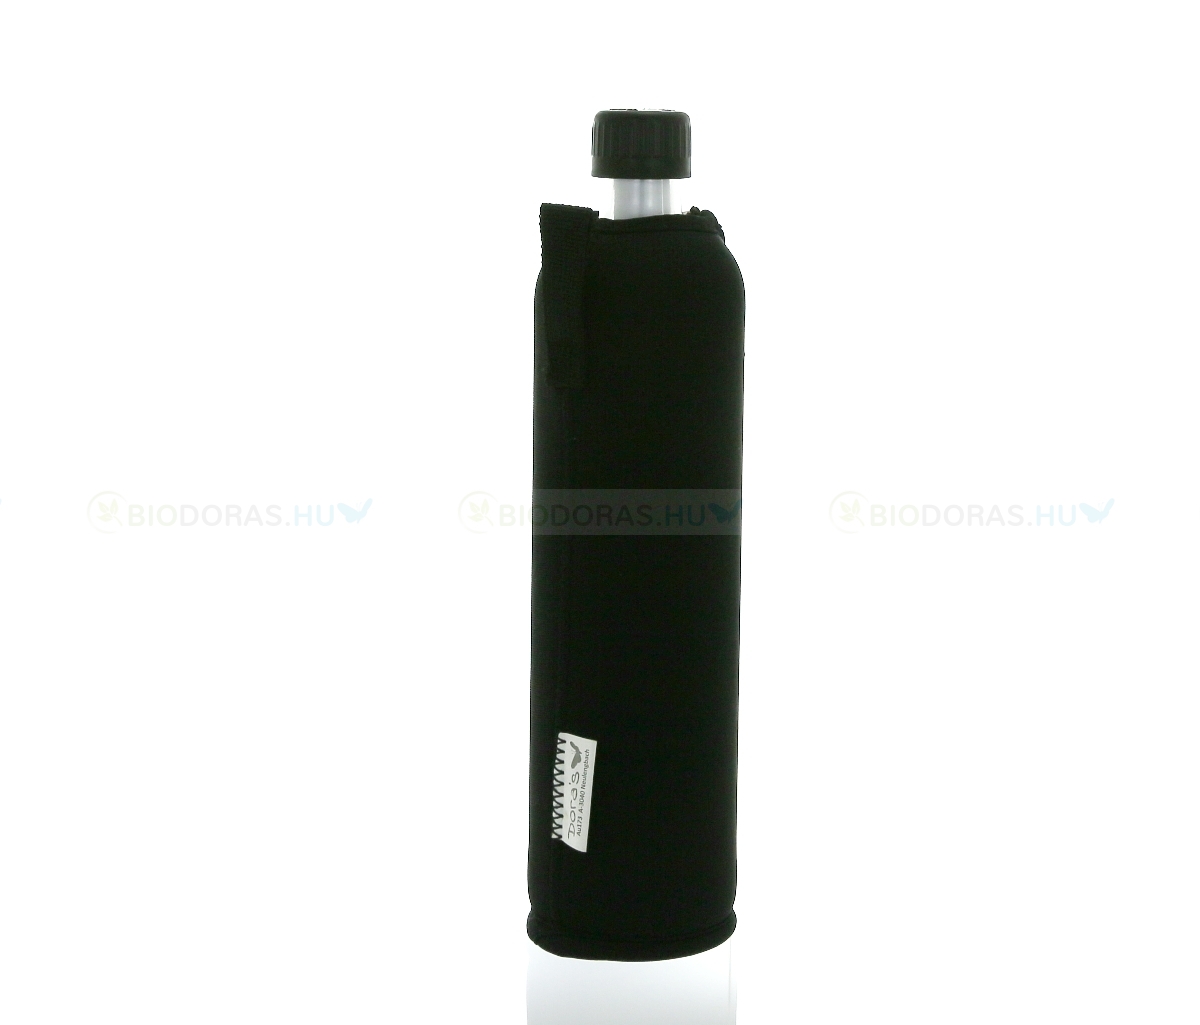 DORAS Üvegkulacs (üvegpalack) fekete színű neoprén huzattal - 500 ml